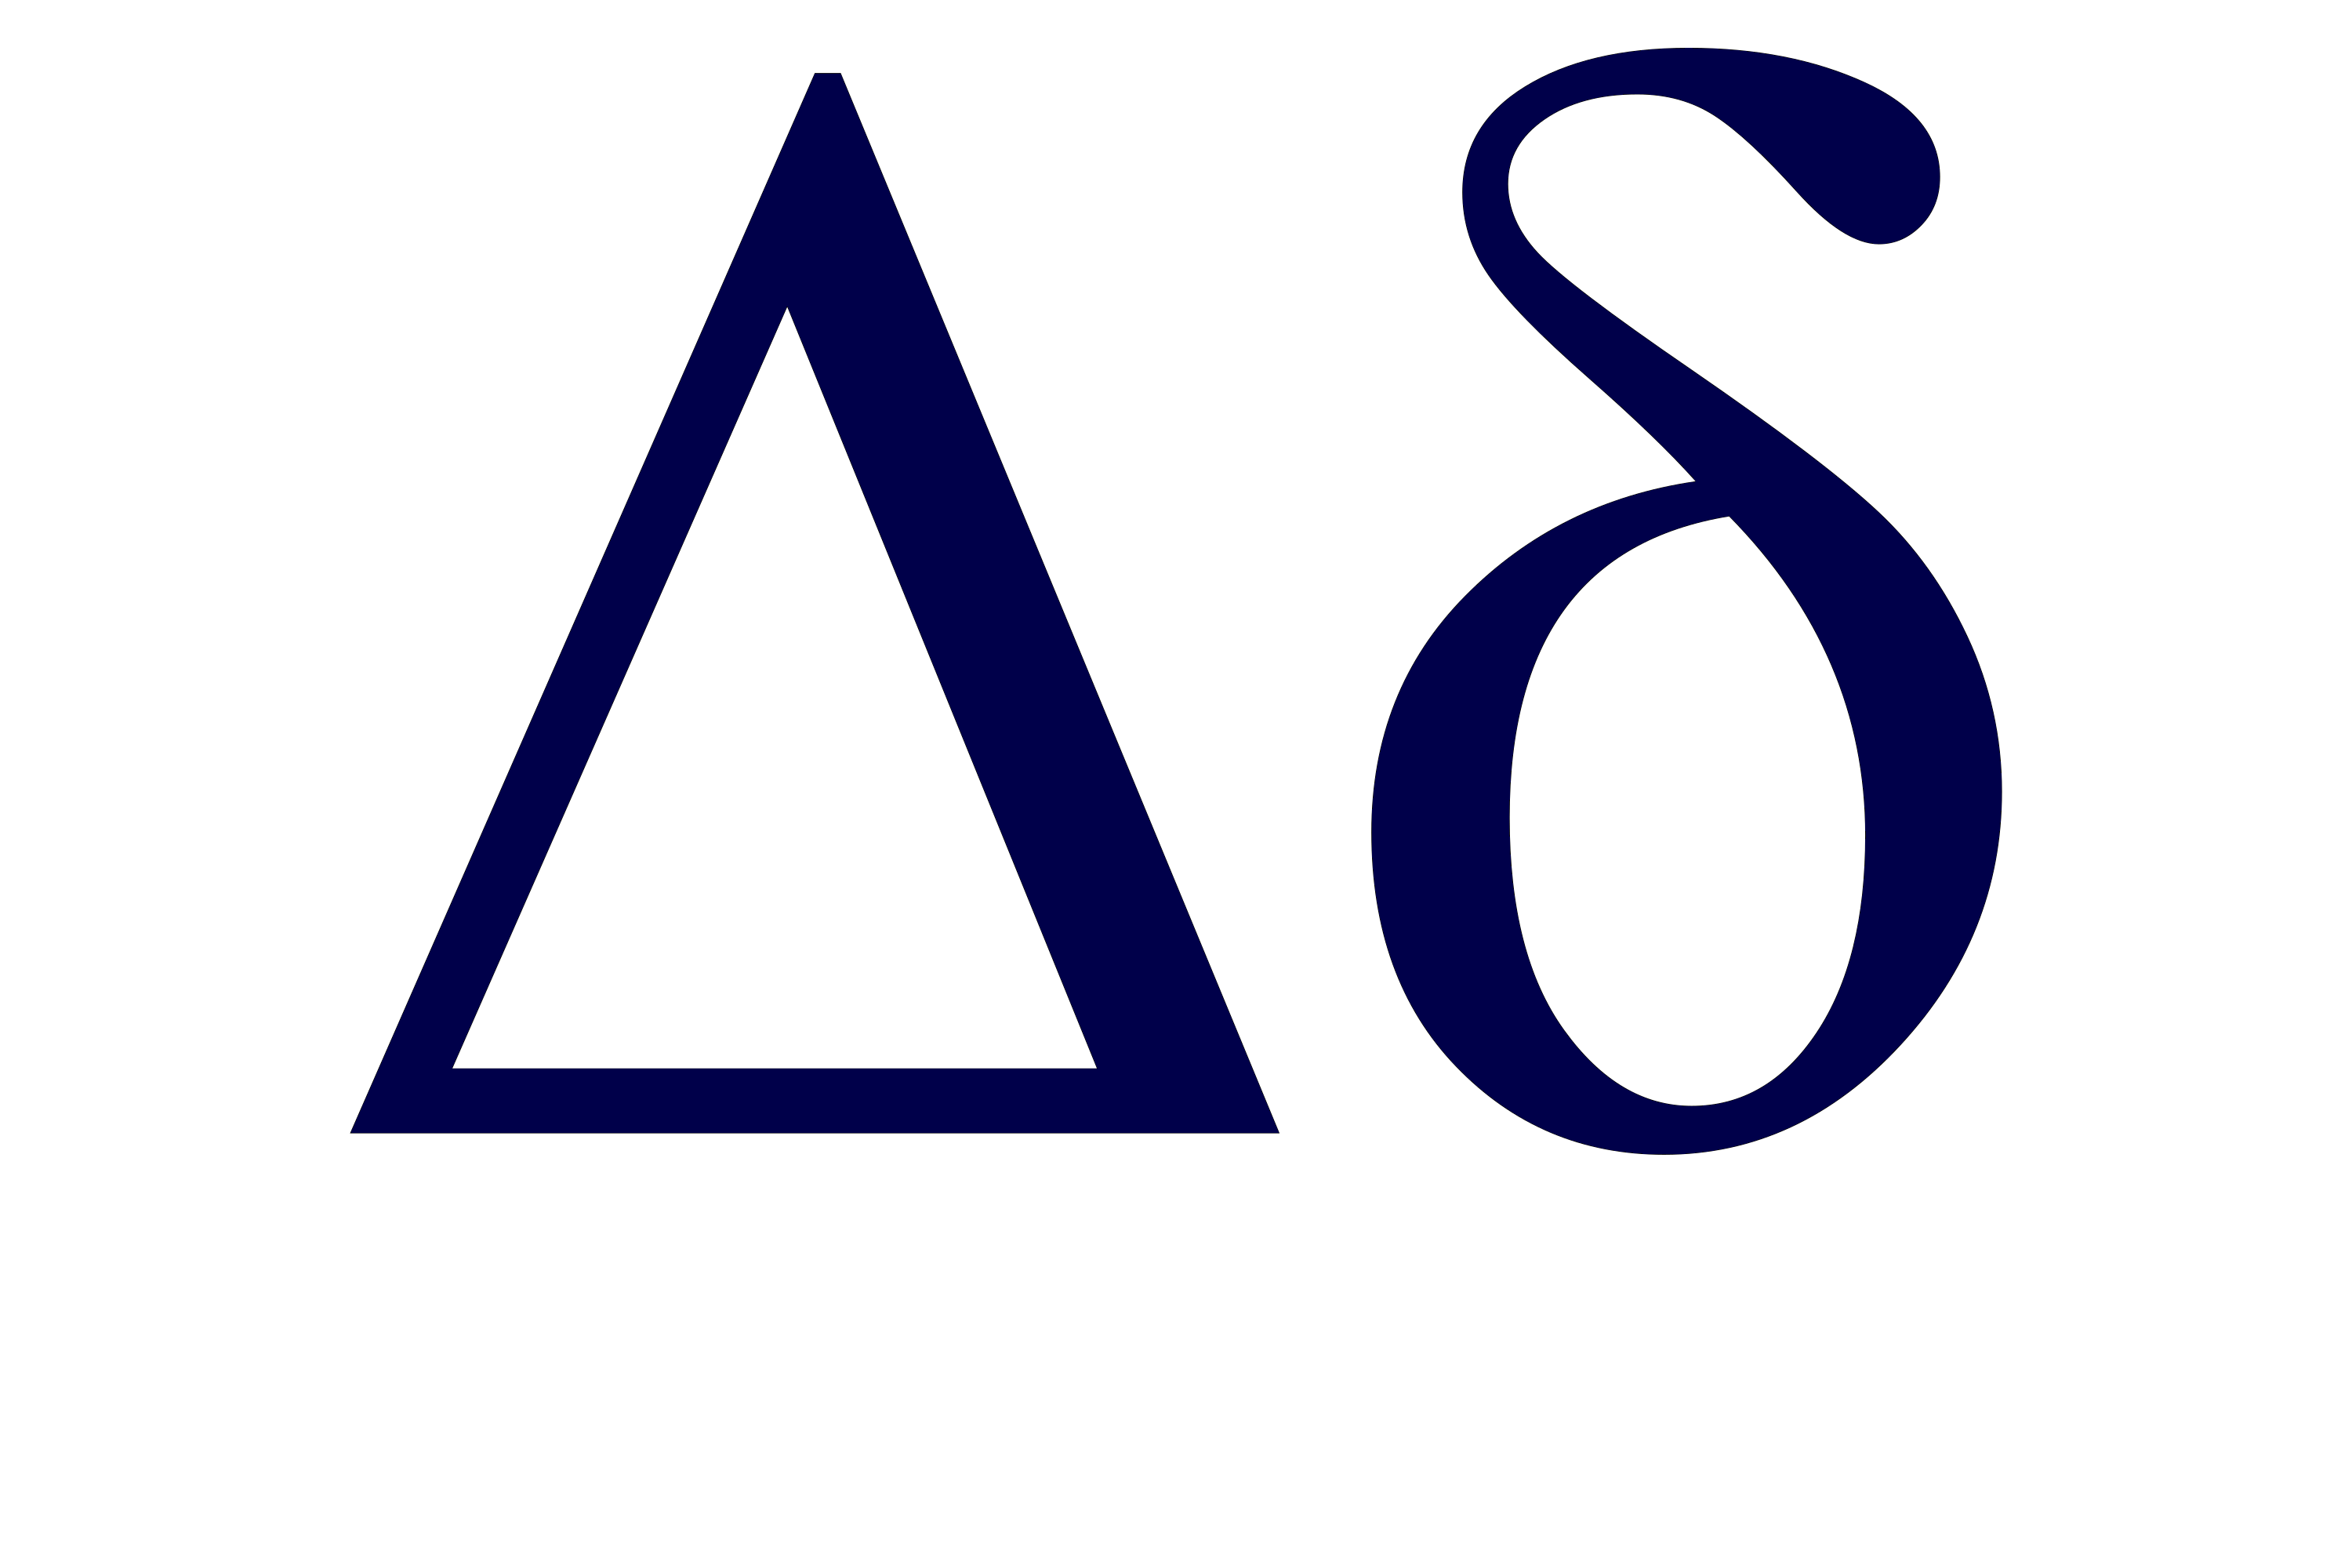 Delta Greek Letter Symbol